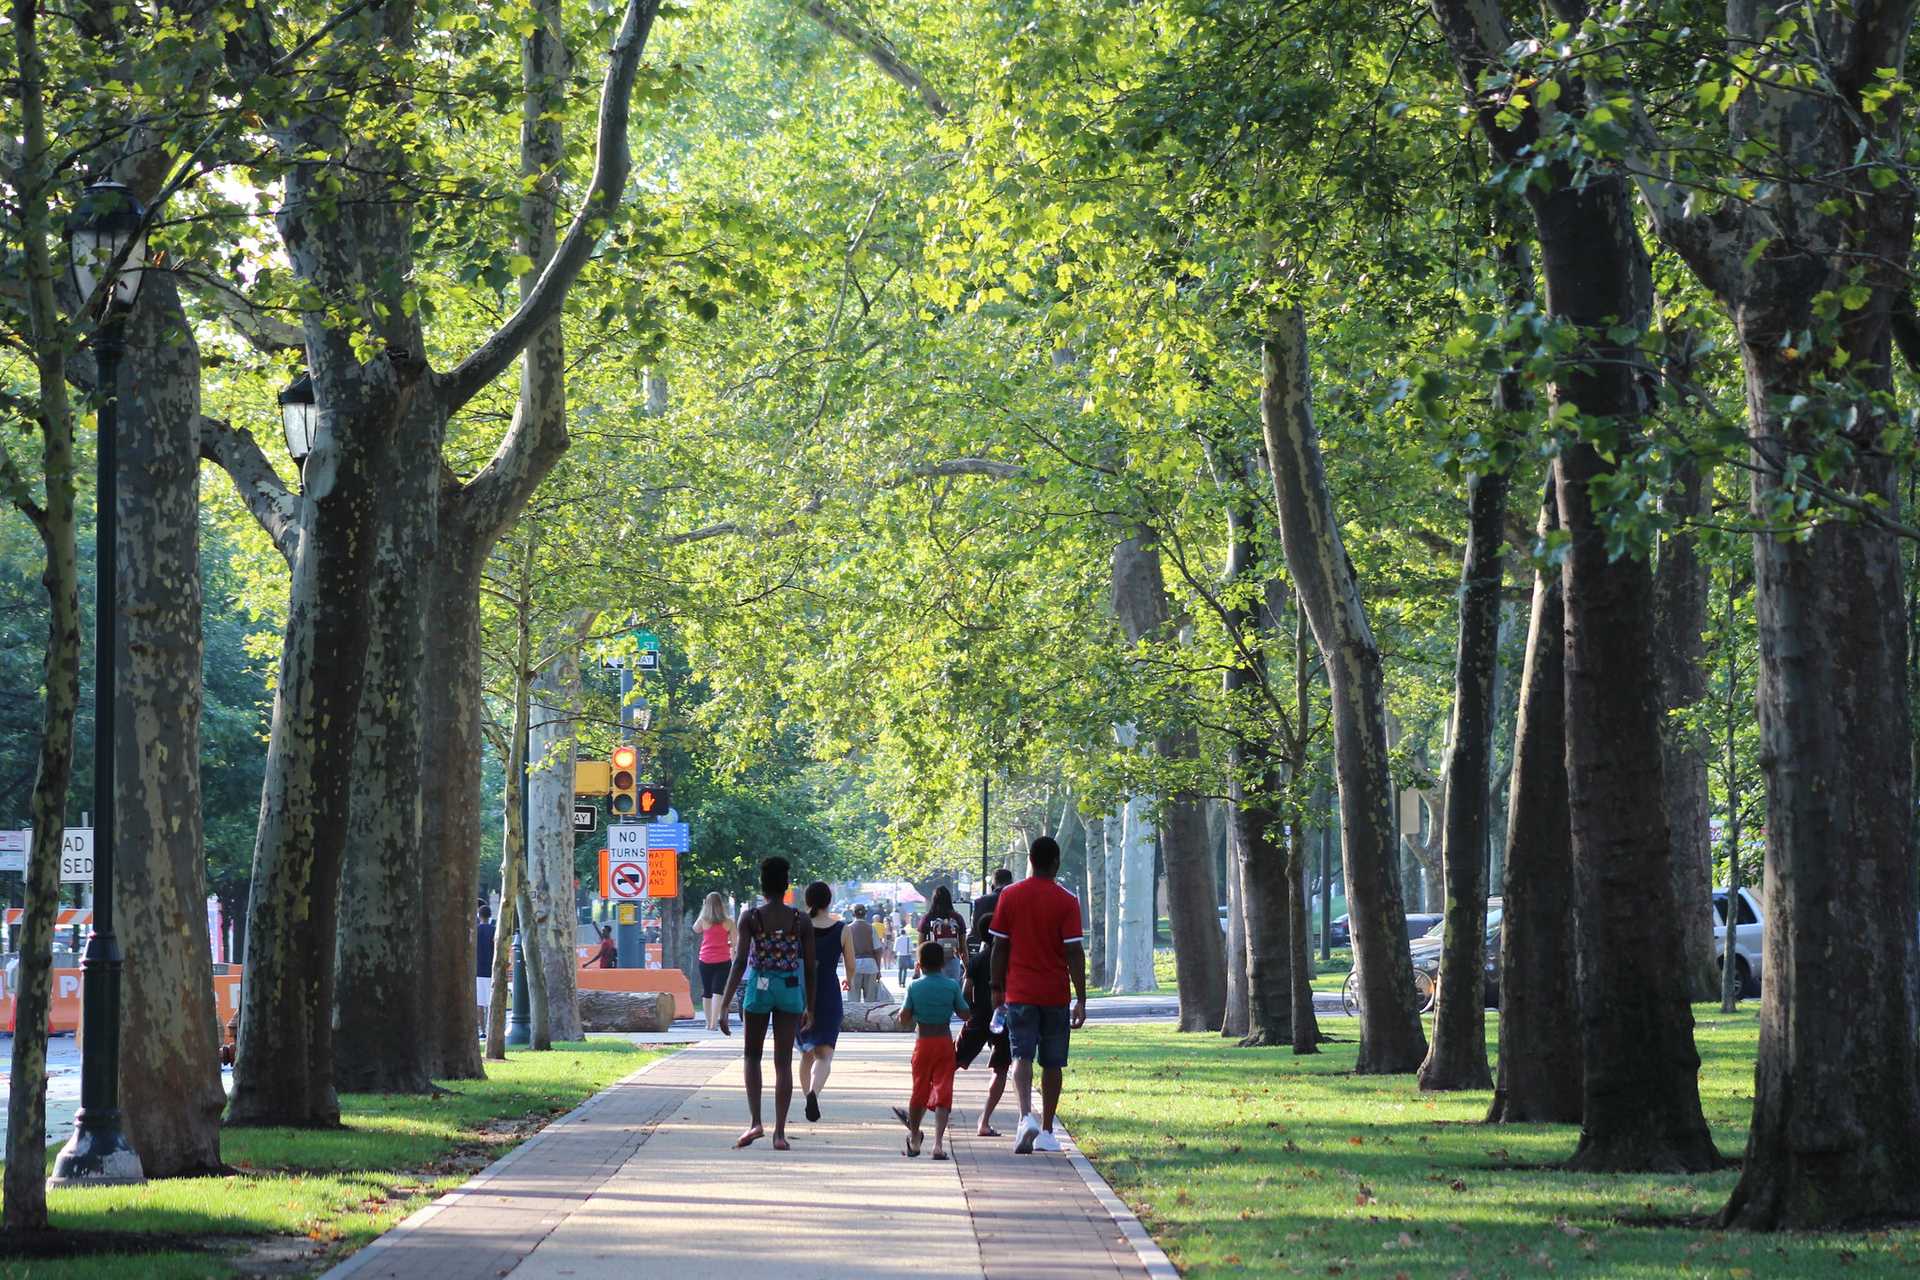 Children walk down a tree-lined promenade in Philadelphia.